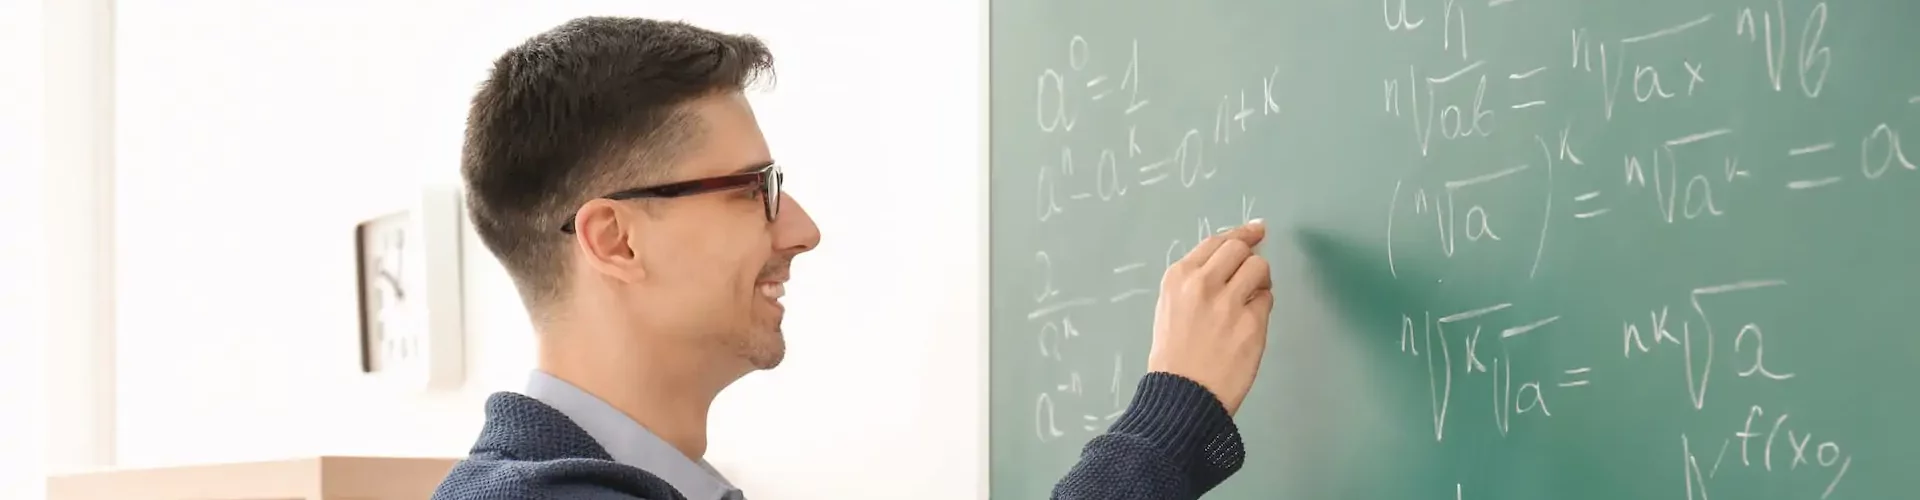 Wiskunde docent iets voor jou?